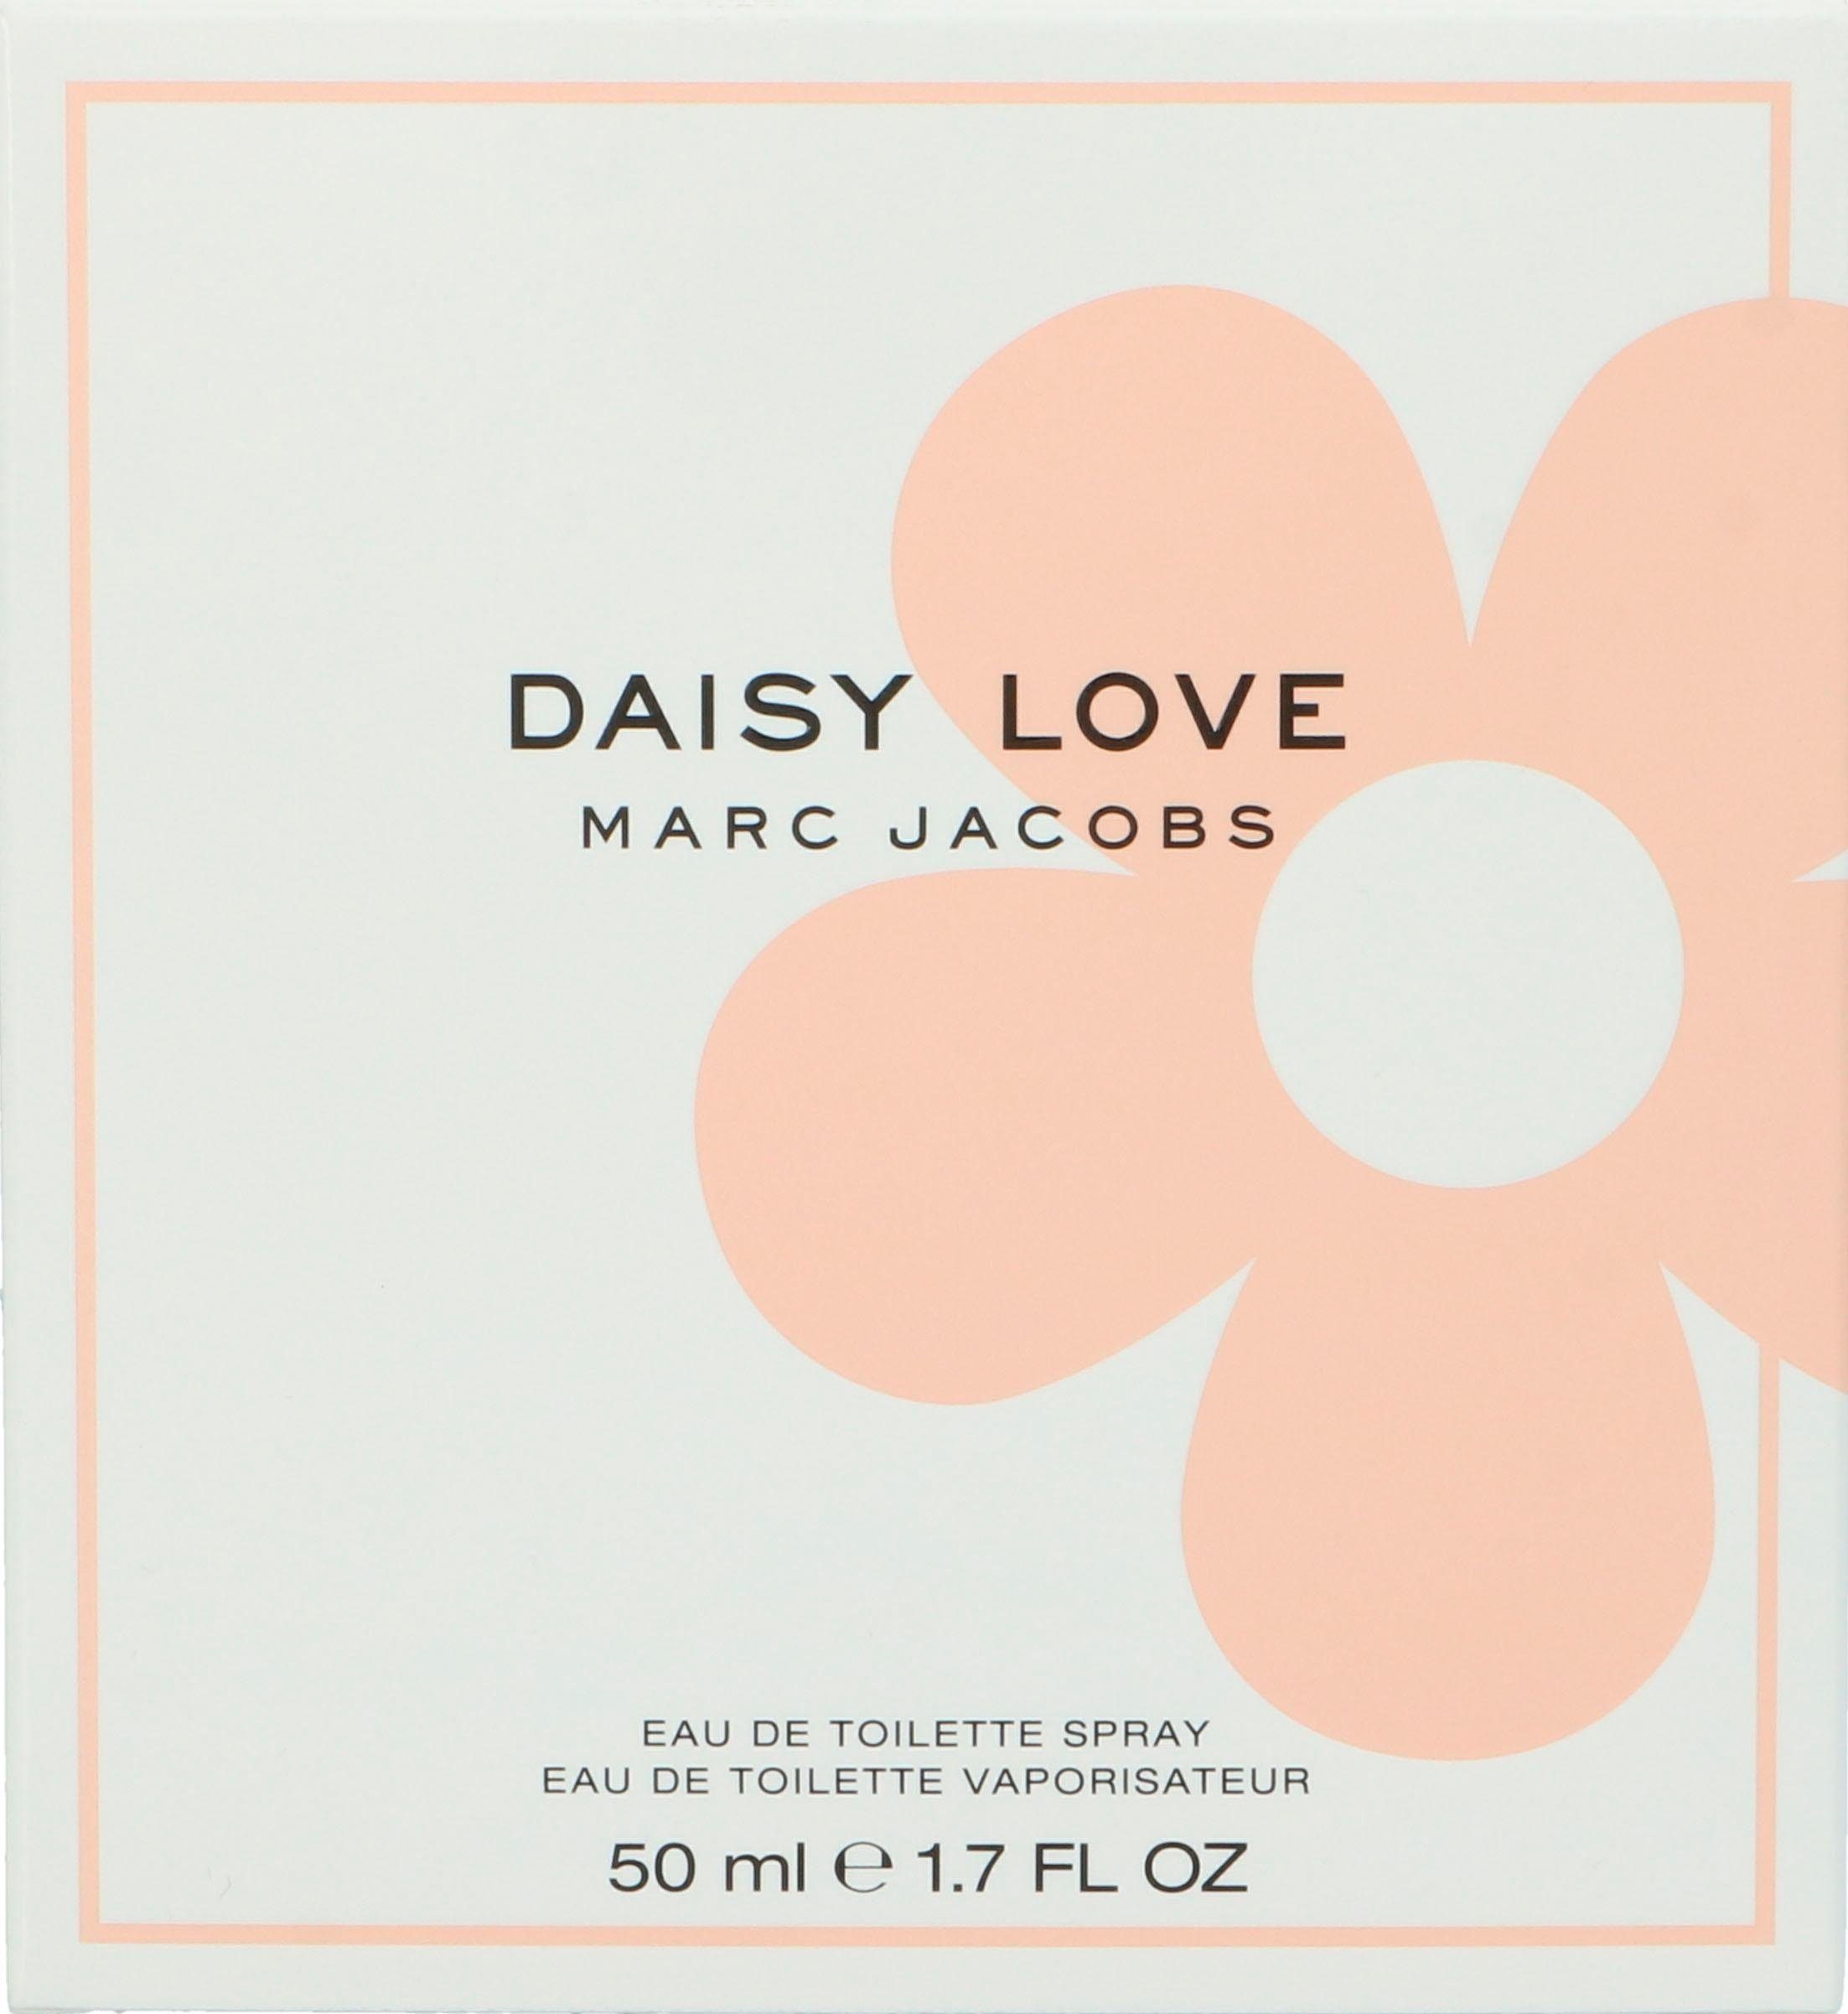 MARC JACOBS de Daisy Eau Love Toilette